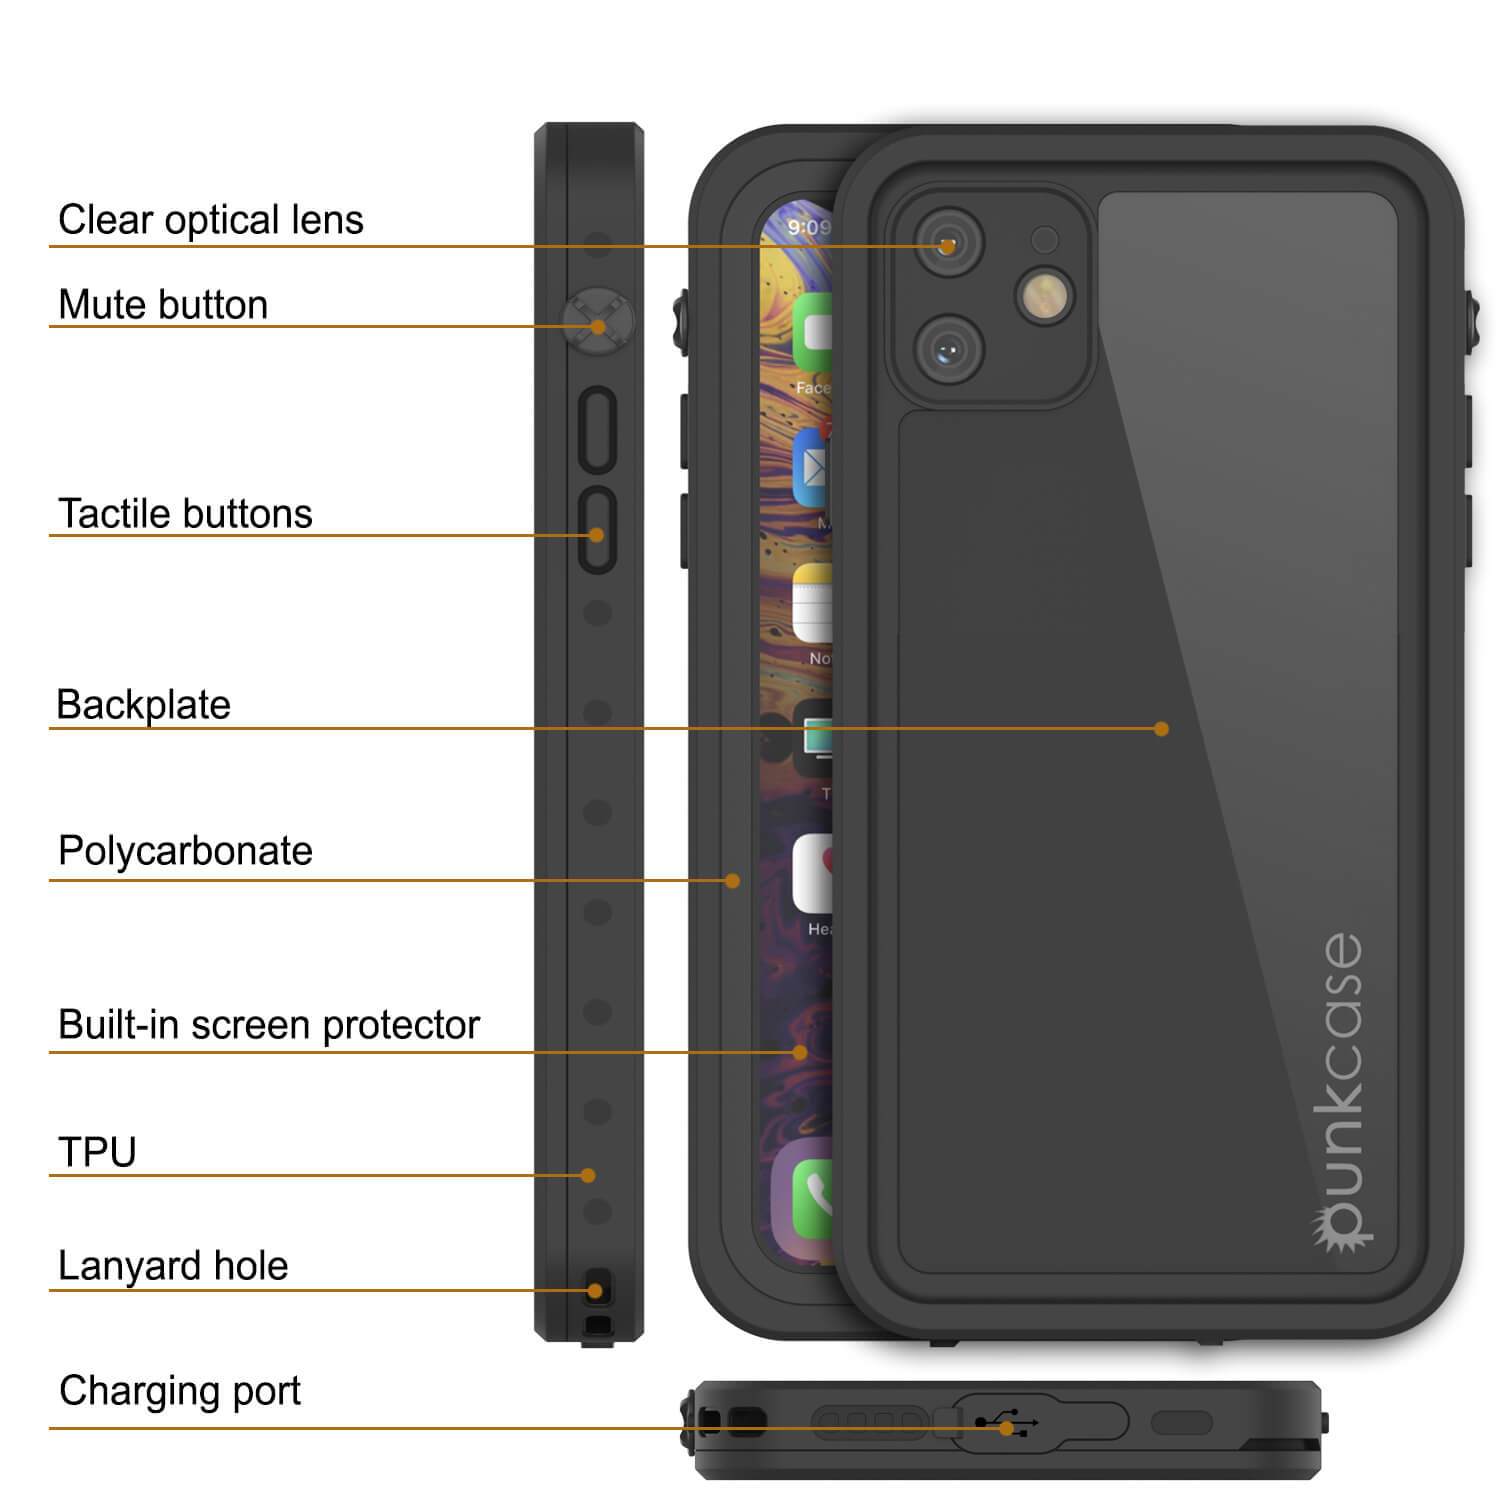 iPhone 11 Waterproof IP68 Case, Punkcase [Black] [StudStar Series] [Slim Fit]